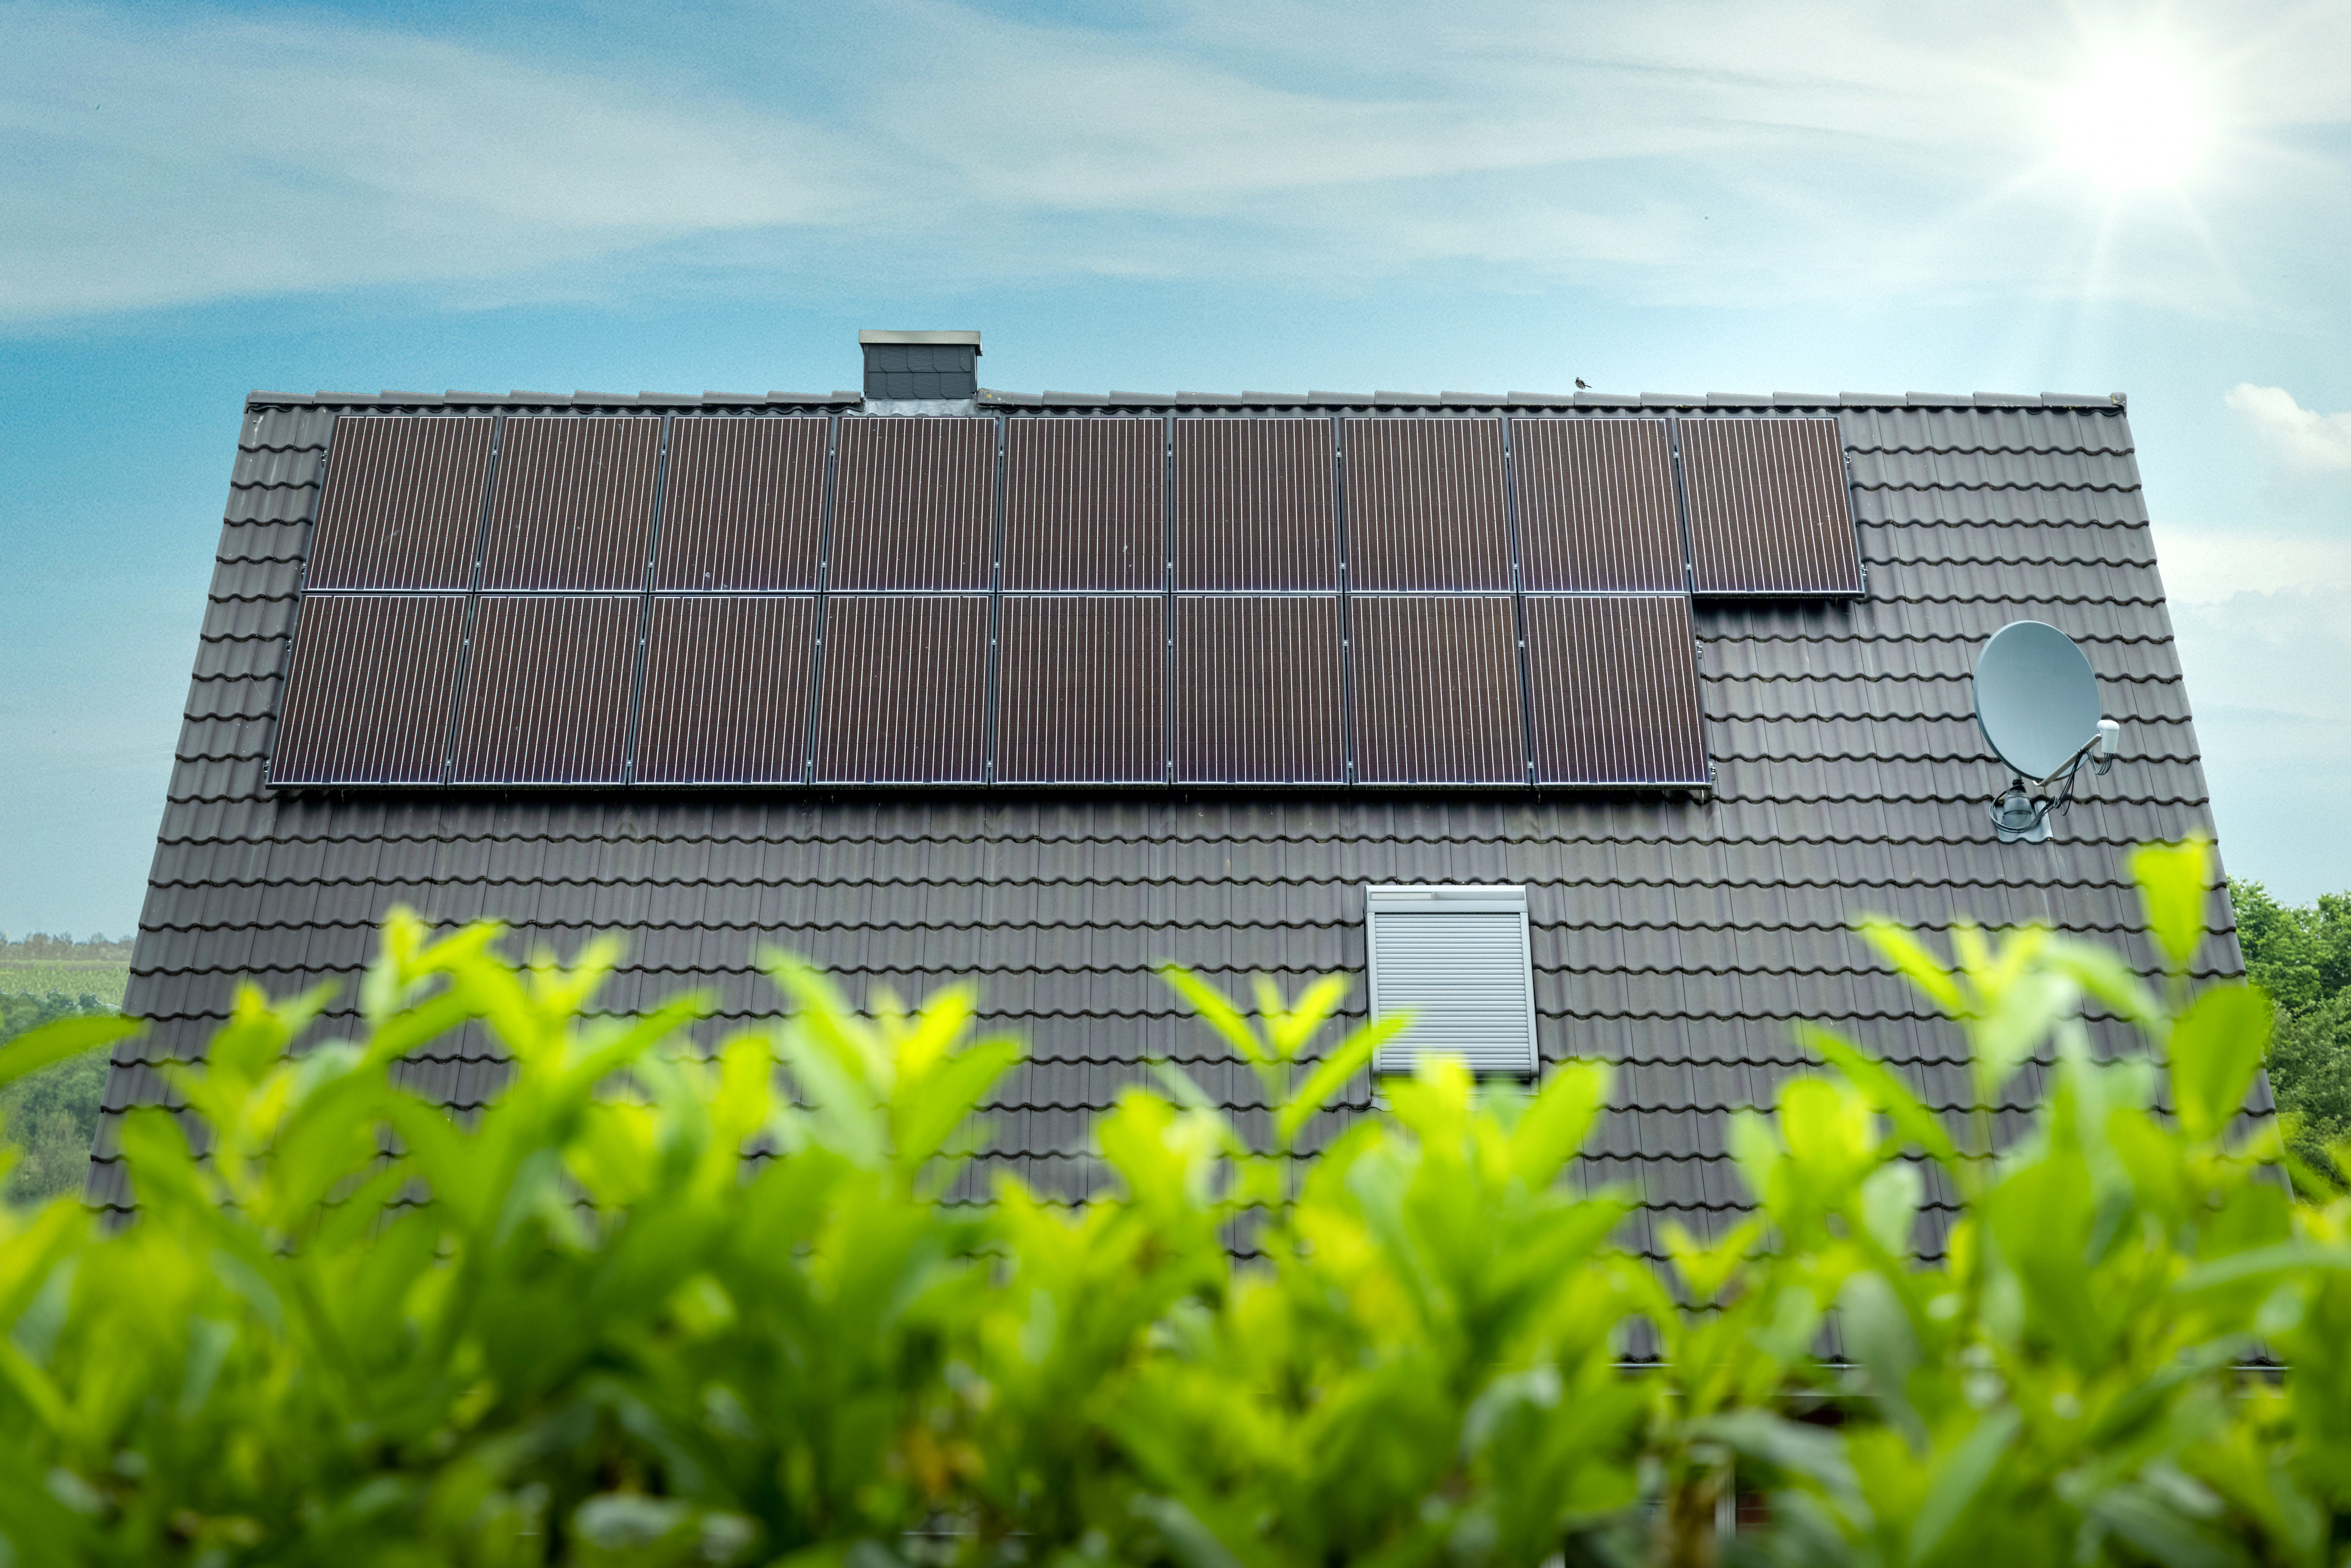                                                     Solarthermie-Kollektoren auf einem Hausdach                                    